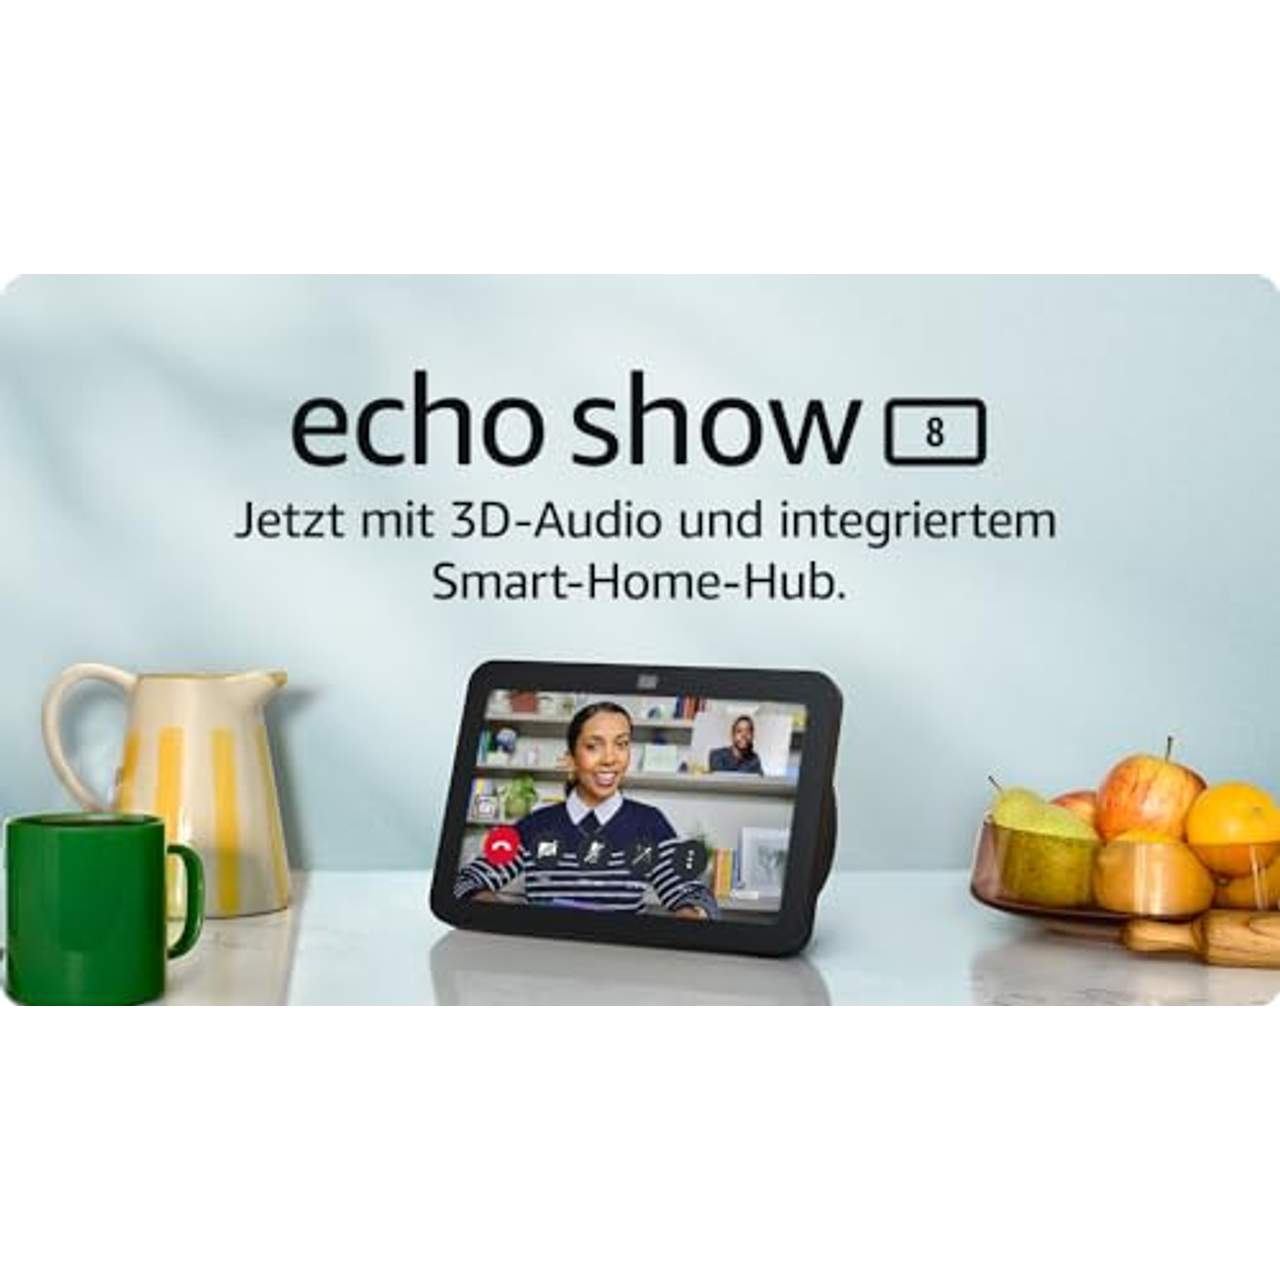 Der neue Echo Show 8